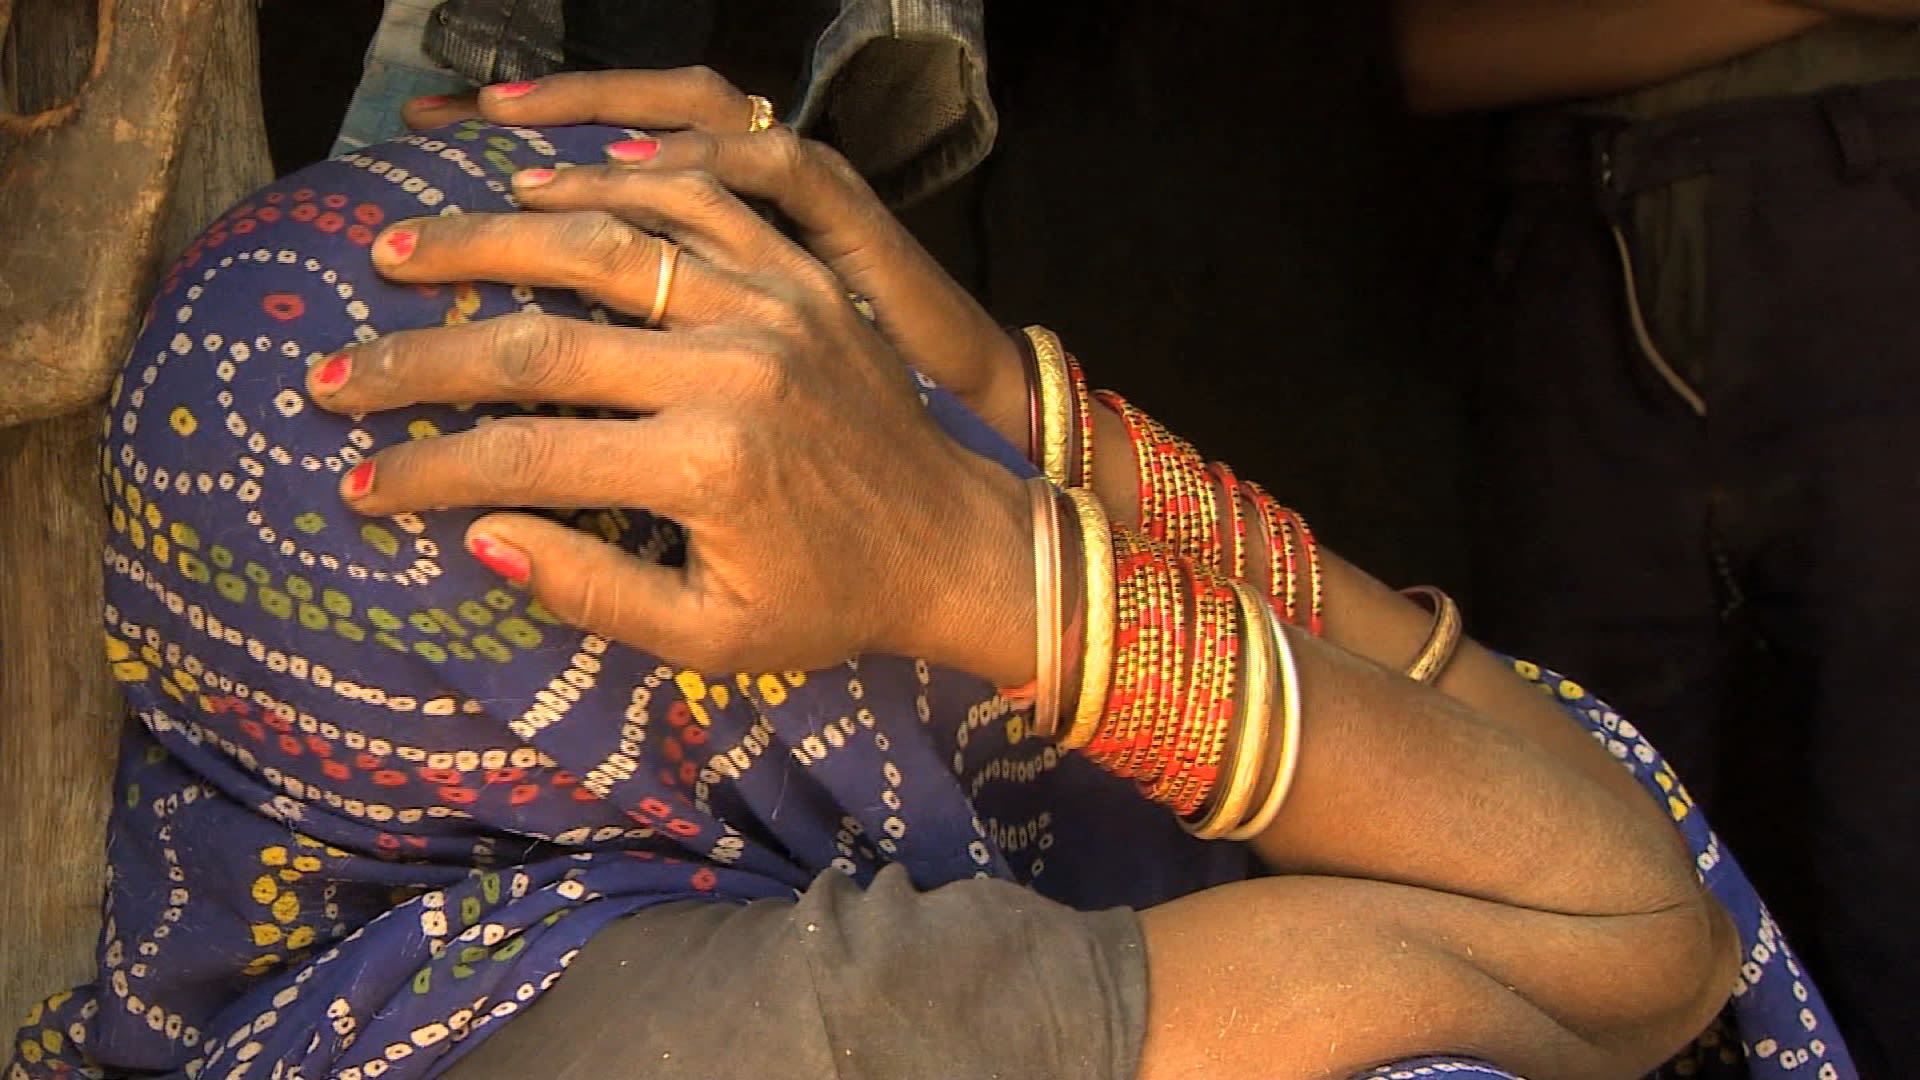 Indian Gang Rape Sex Videos - Third Indian allegedly raped, set on fire | CNN